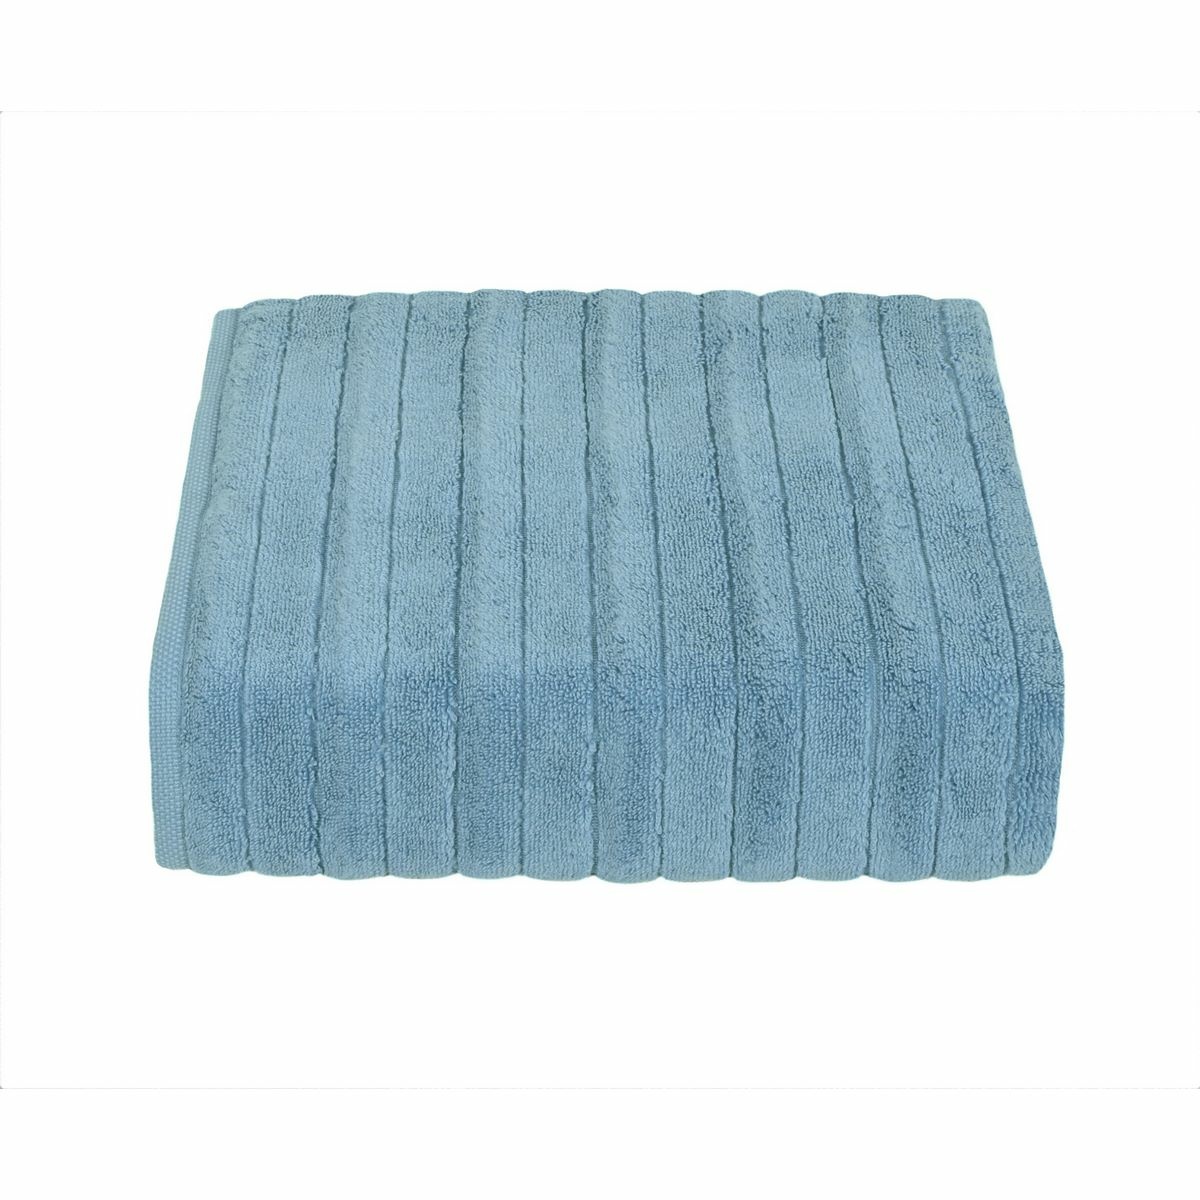 Ręcznik mikrobavlna DELUXE niebieski, 50 x 95 cm, 50 x 95 cm